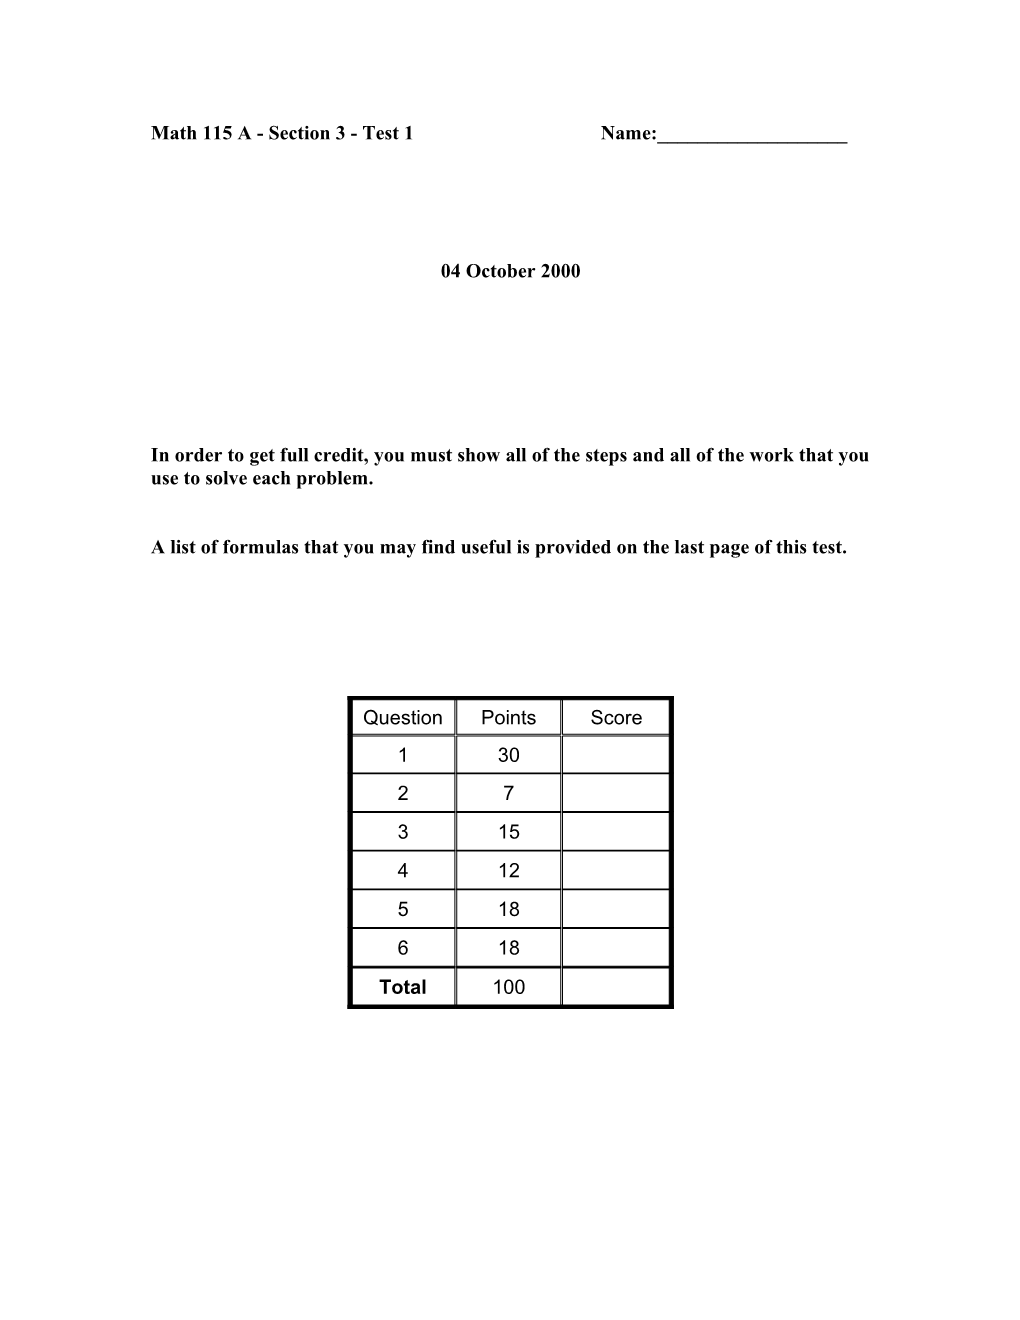 Math 115 a - Section 3 - Test 1